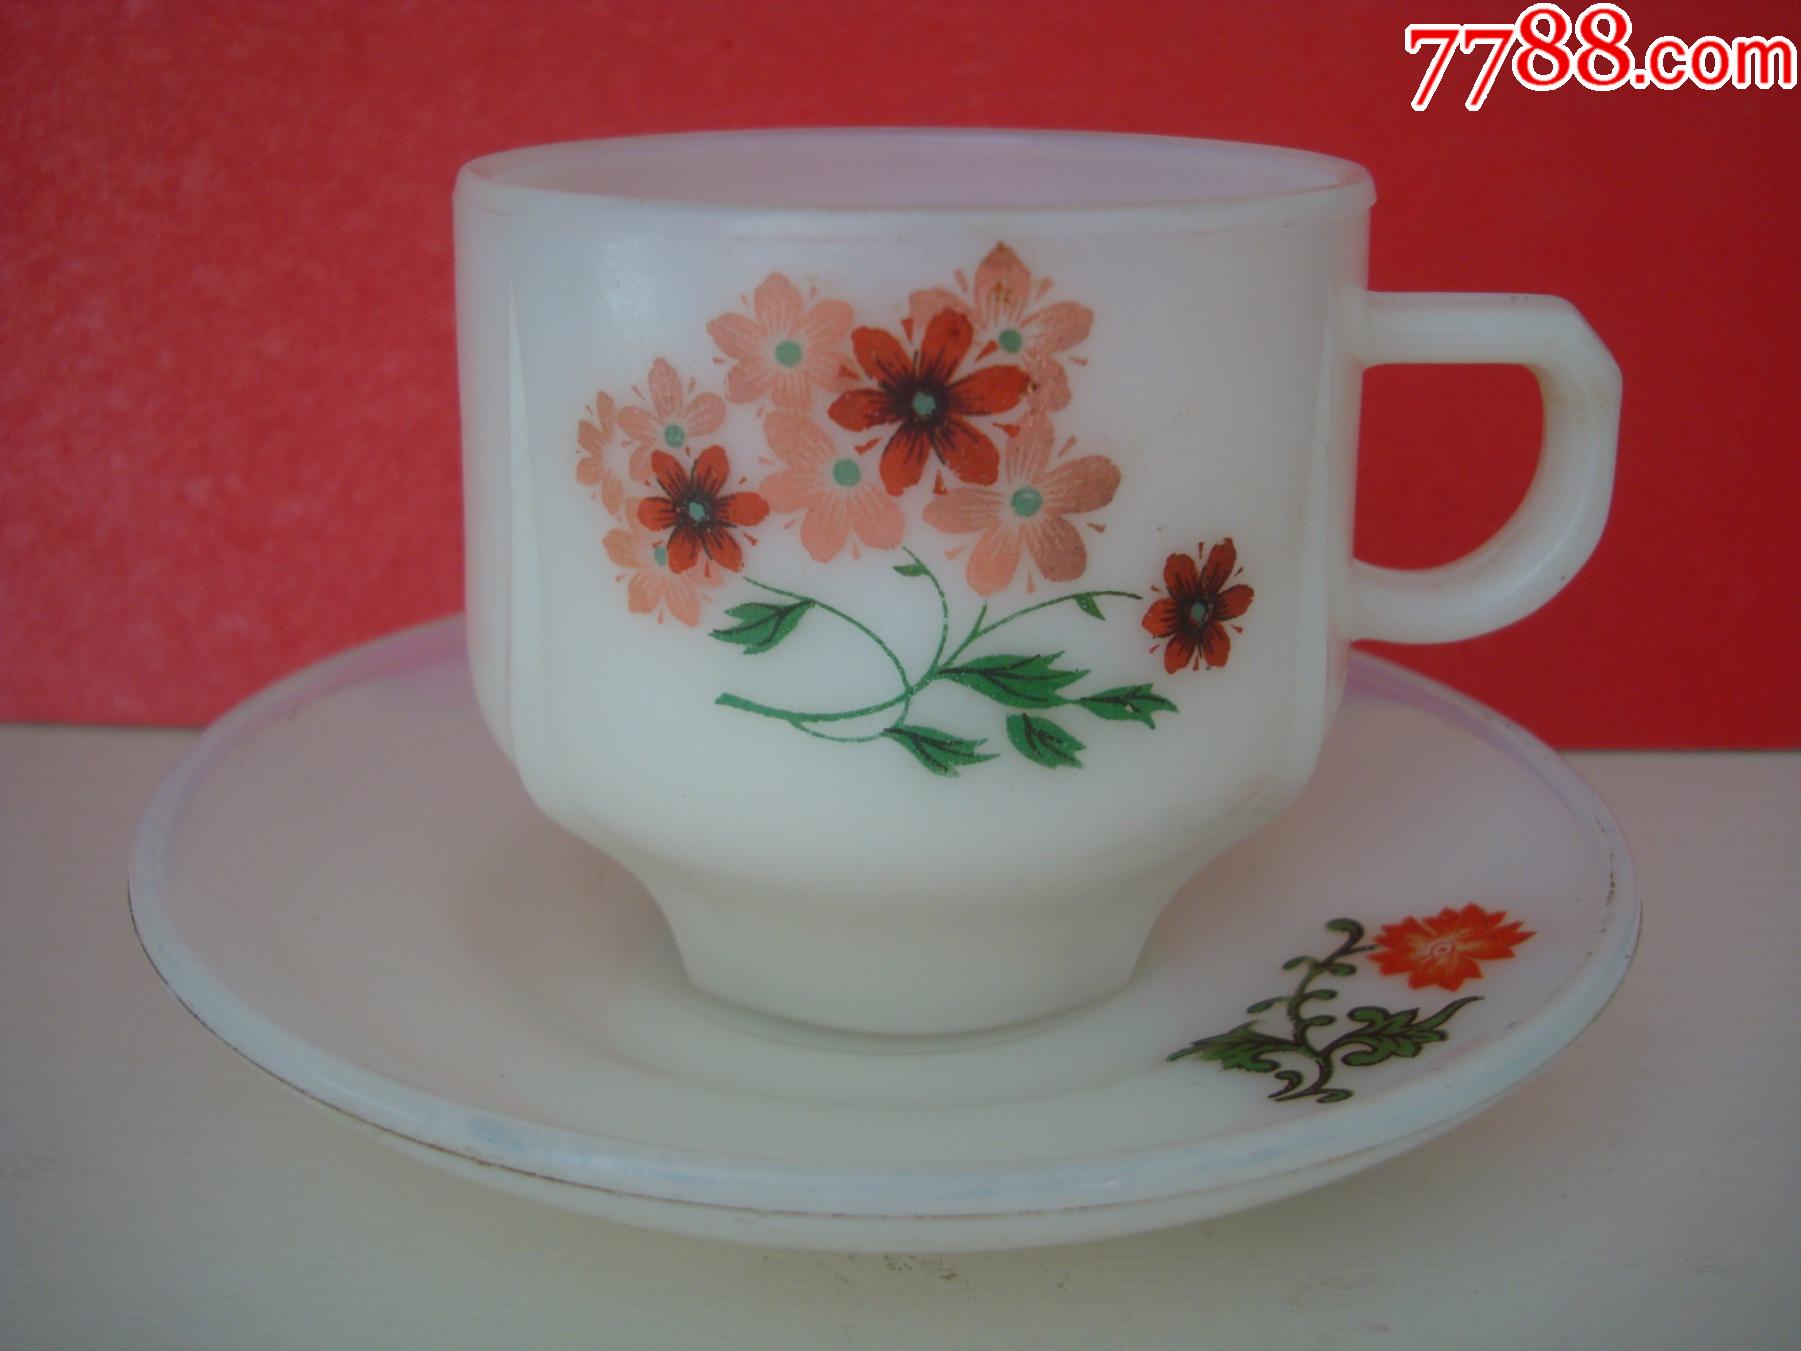 雪花商标中国制造――琉璃咖啡杯托碟一套